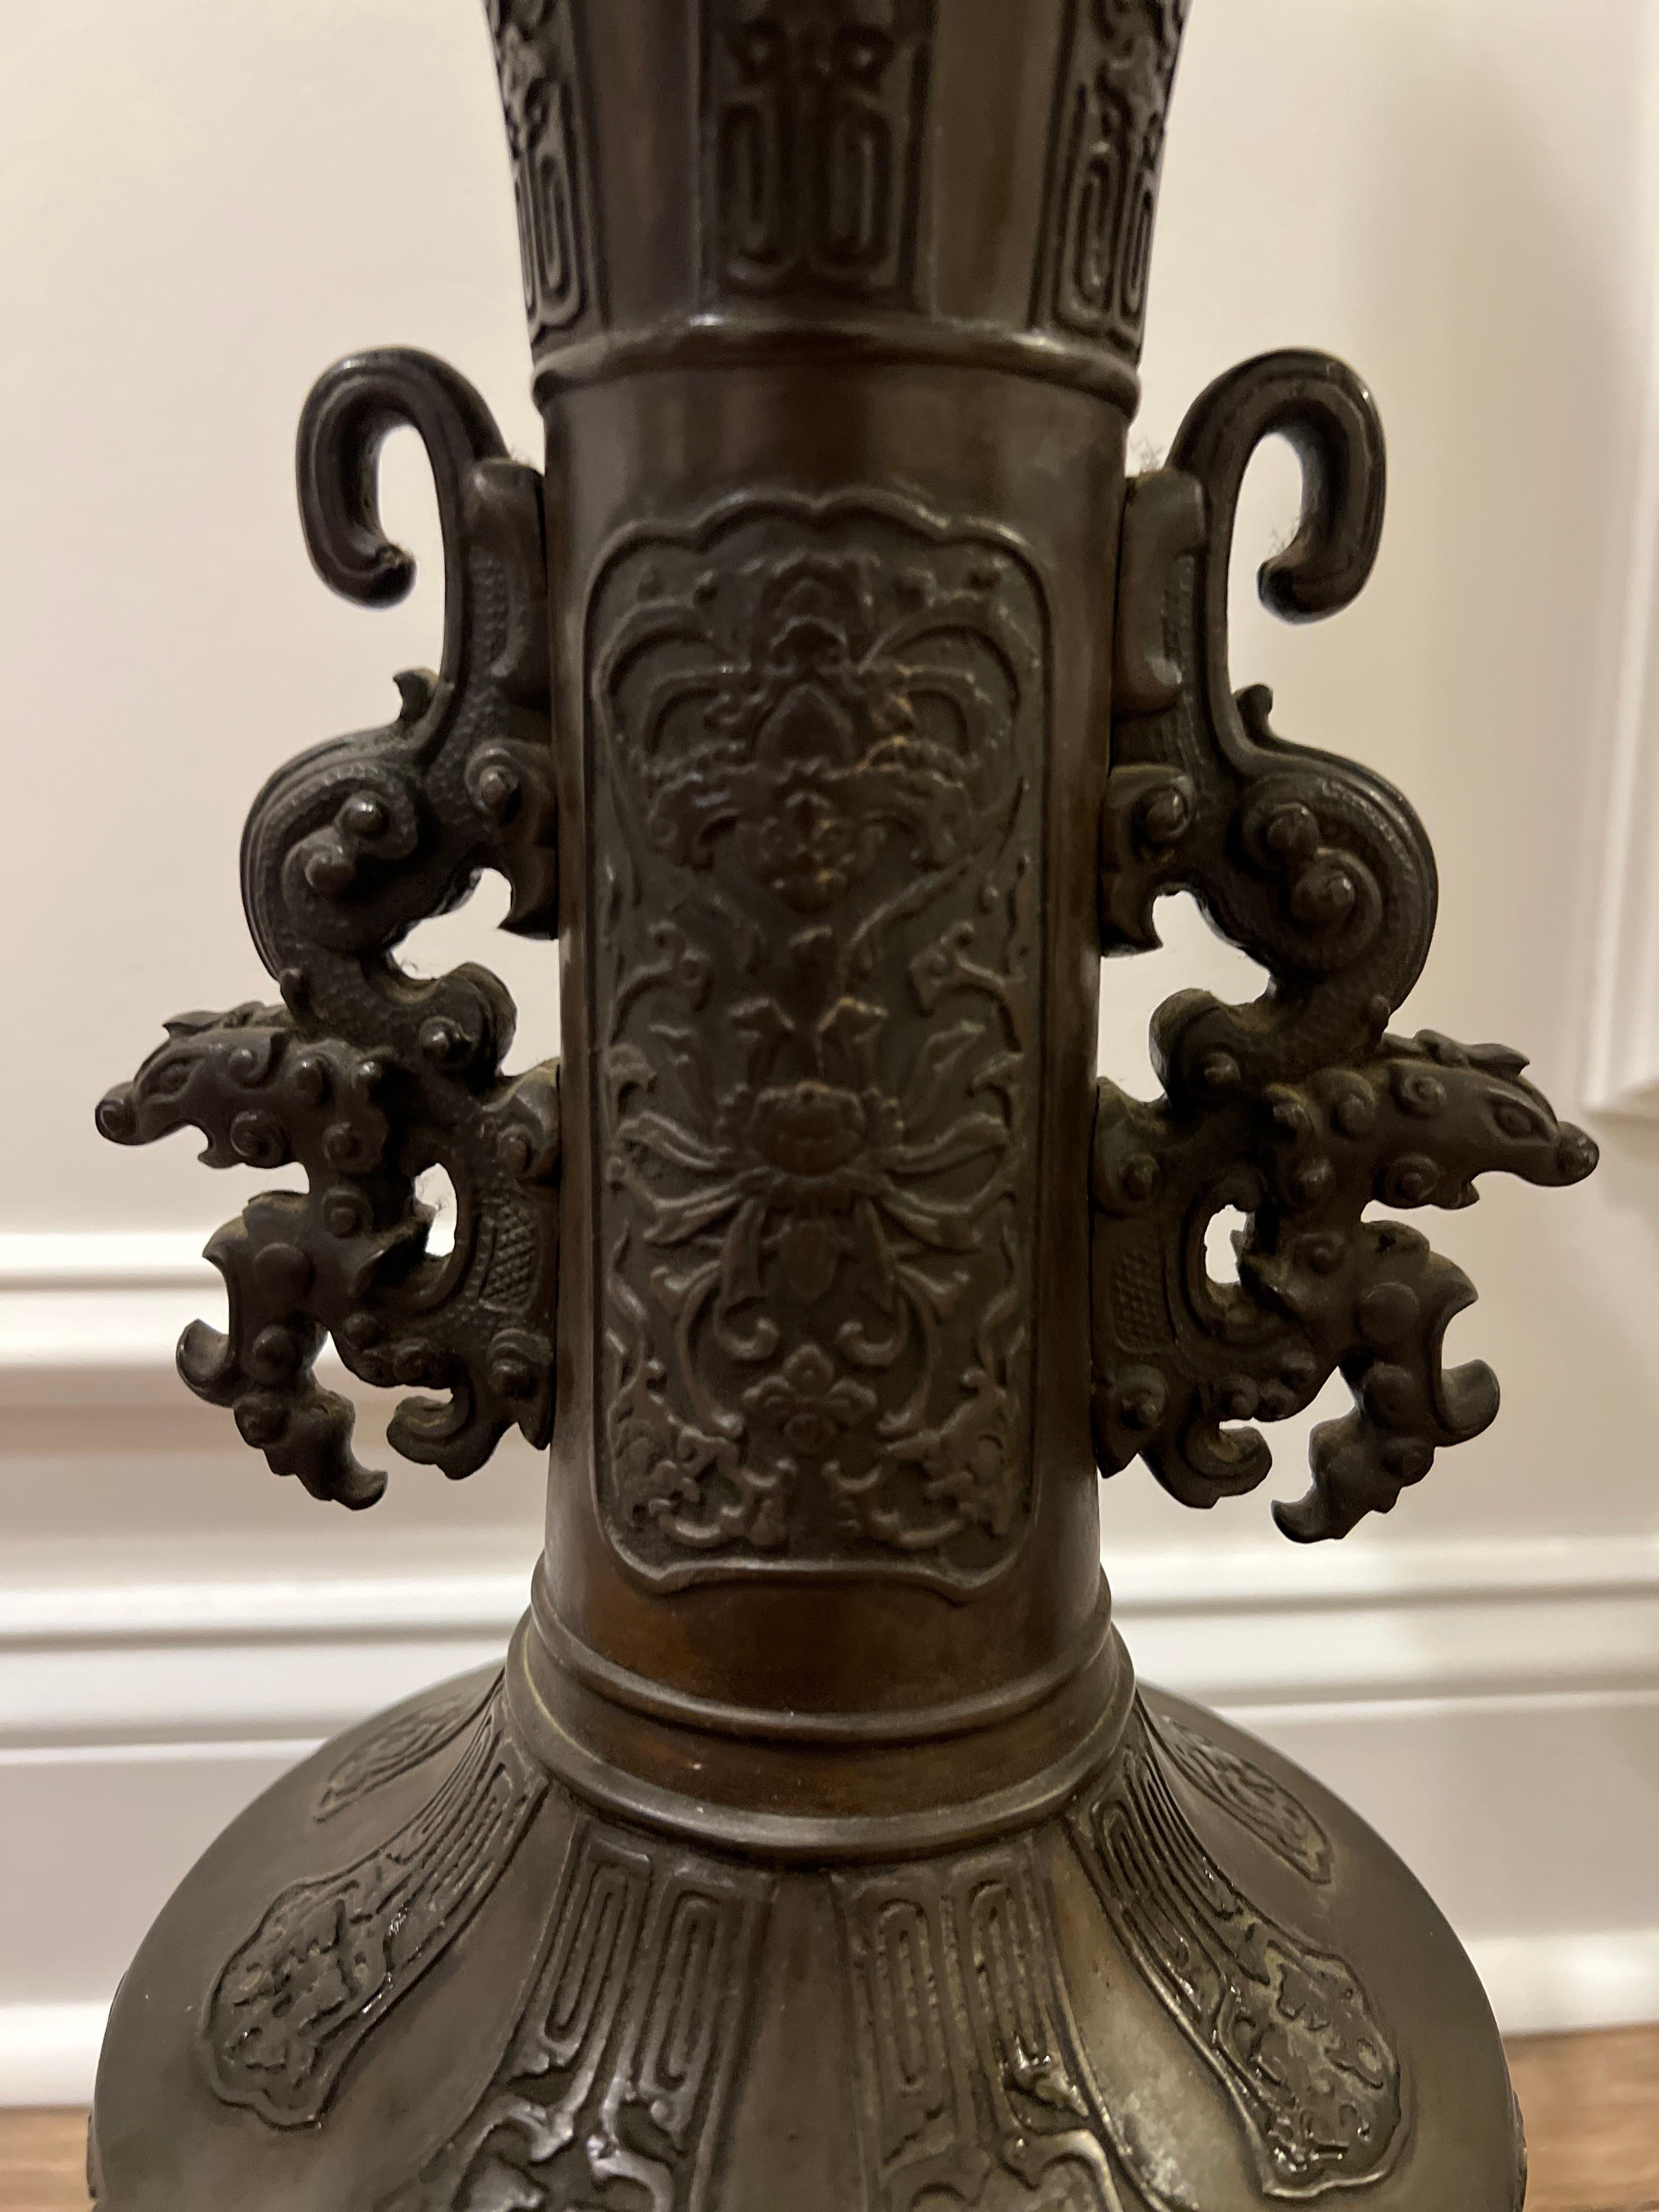 Japonais, vers 1900.

Paire de lampes de table japonaises anciennes en bronze. Les lampes présentent un corps détaillé avec des motifs appliqués de fleurs de lotus et d'oiseaux au centre, des motifs japonais traditionnels sur l'ensemble du corps et